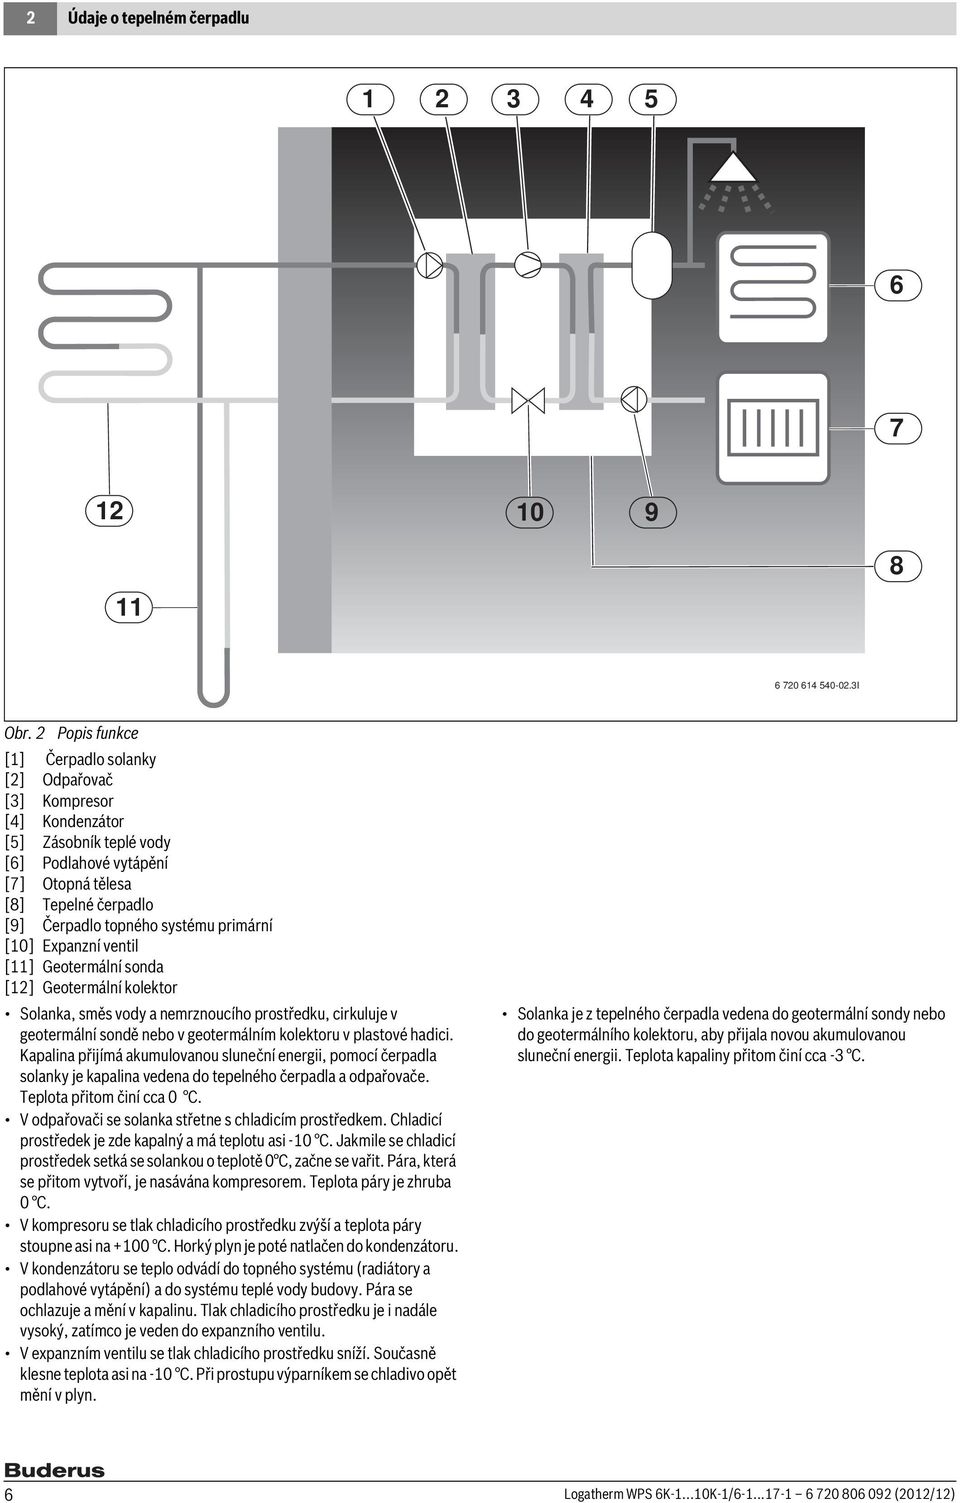 primární [10] Expanzní ventil [11] Geotermální sonda [12] Geotermální kolektor Solanka, směs vody a nemrznoucího prostředku, cirkuluje v geotermální sondě nebo v geotermálním kolektoru v plastové